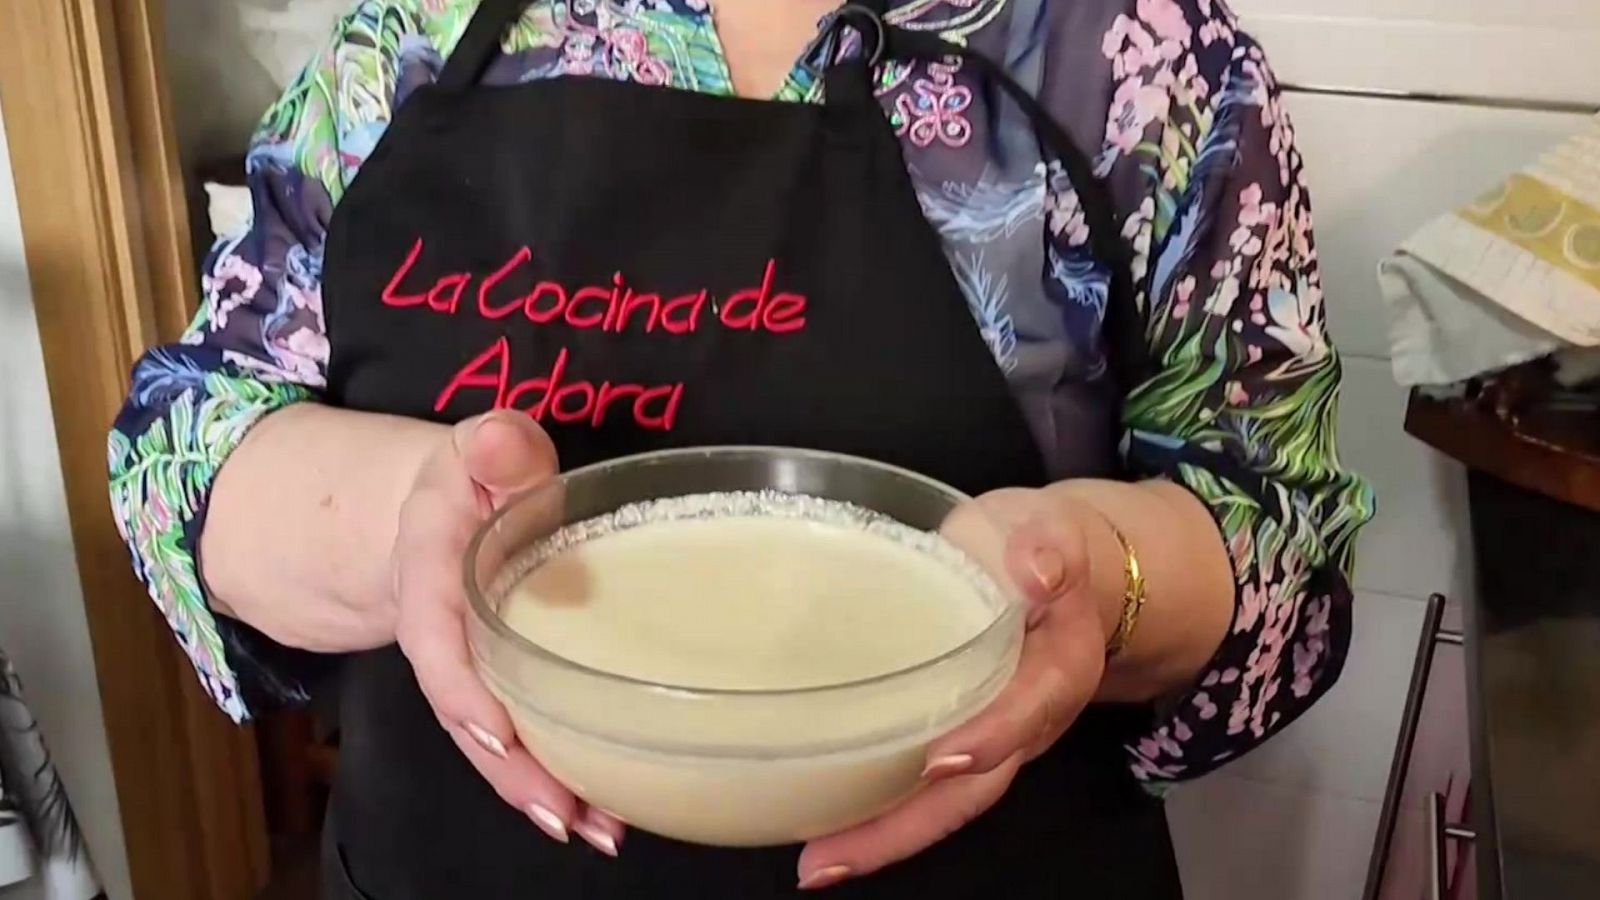 La cocina de Adora: receta de una crema de limón fácil y rápida con pocos ingredientes - Ver ahora